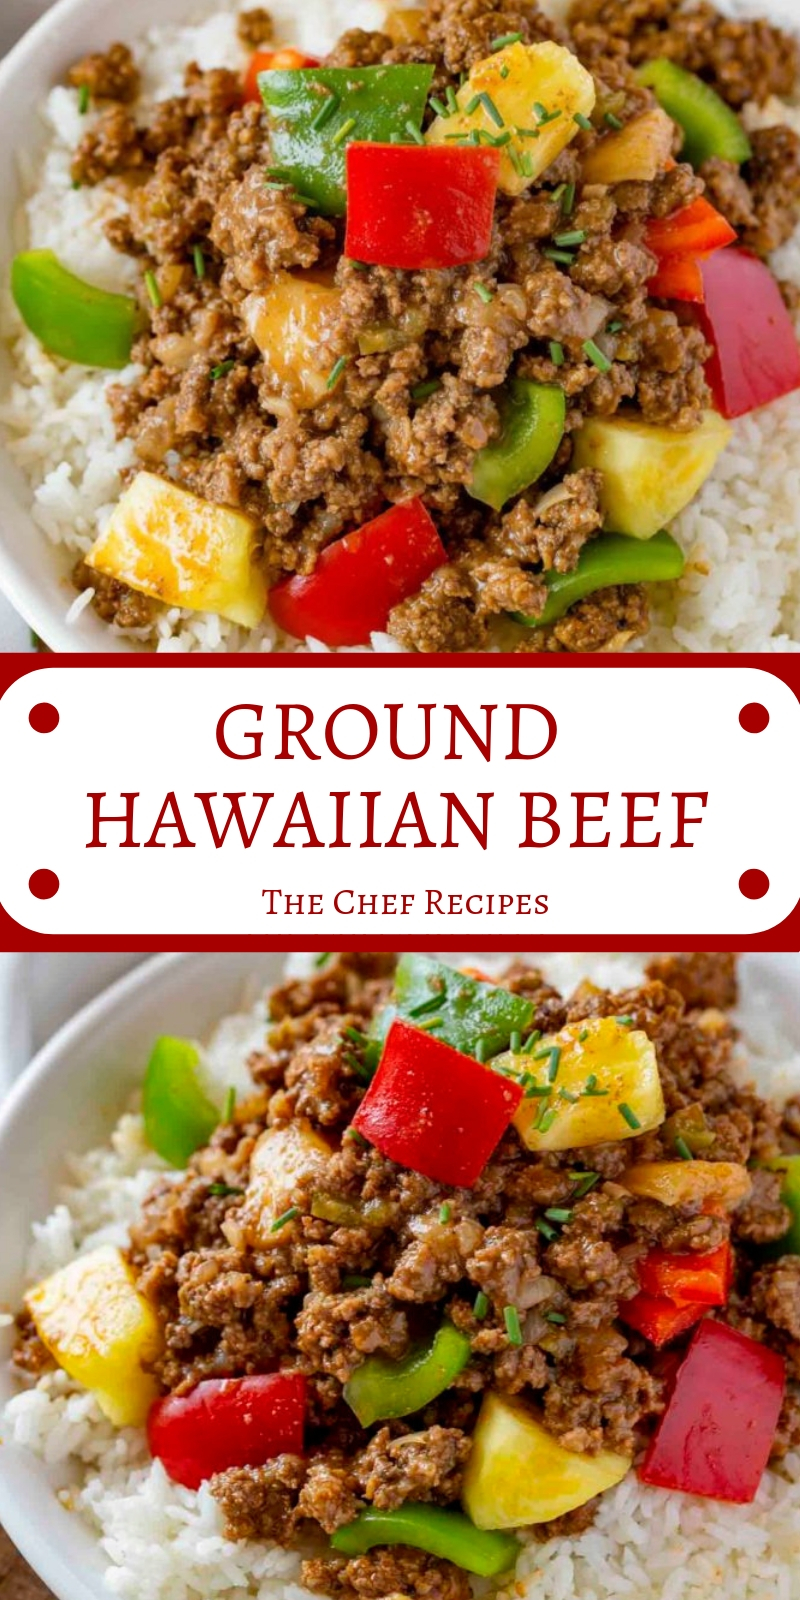 GROUND HAWAIIAN BEEF